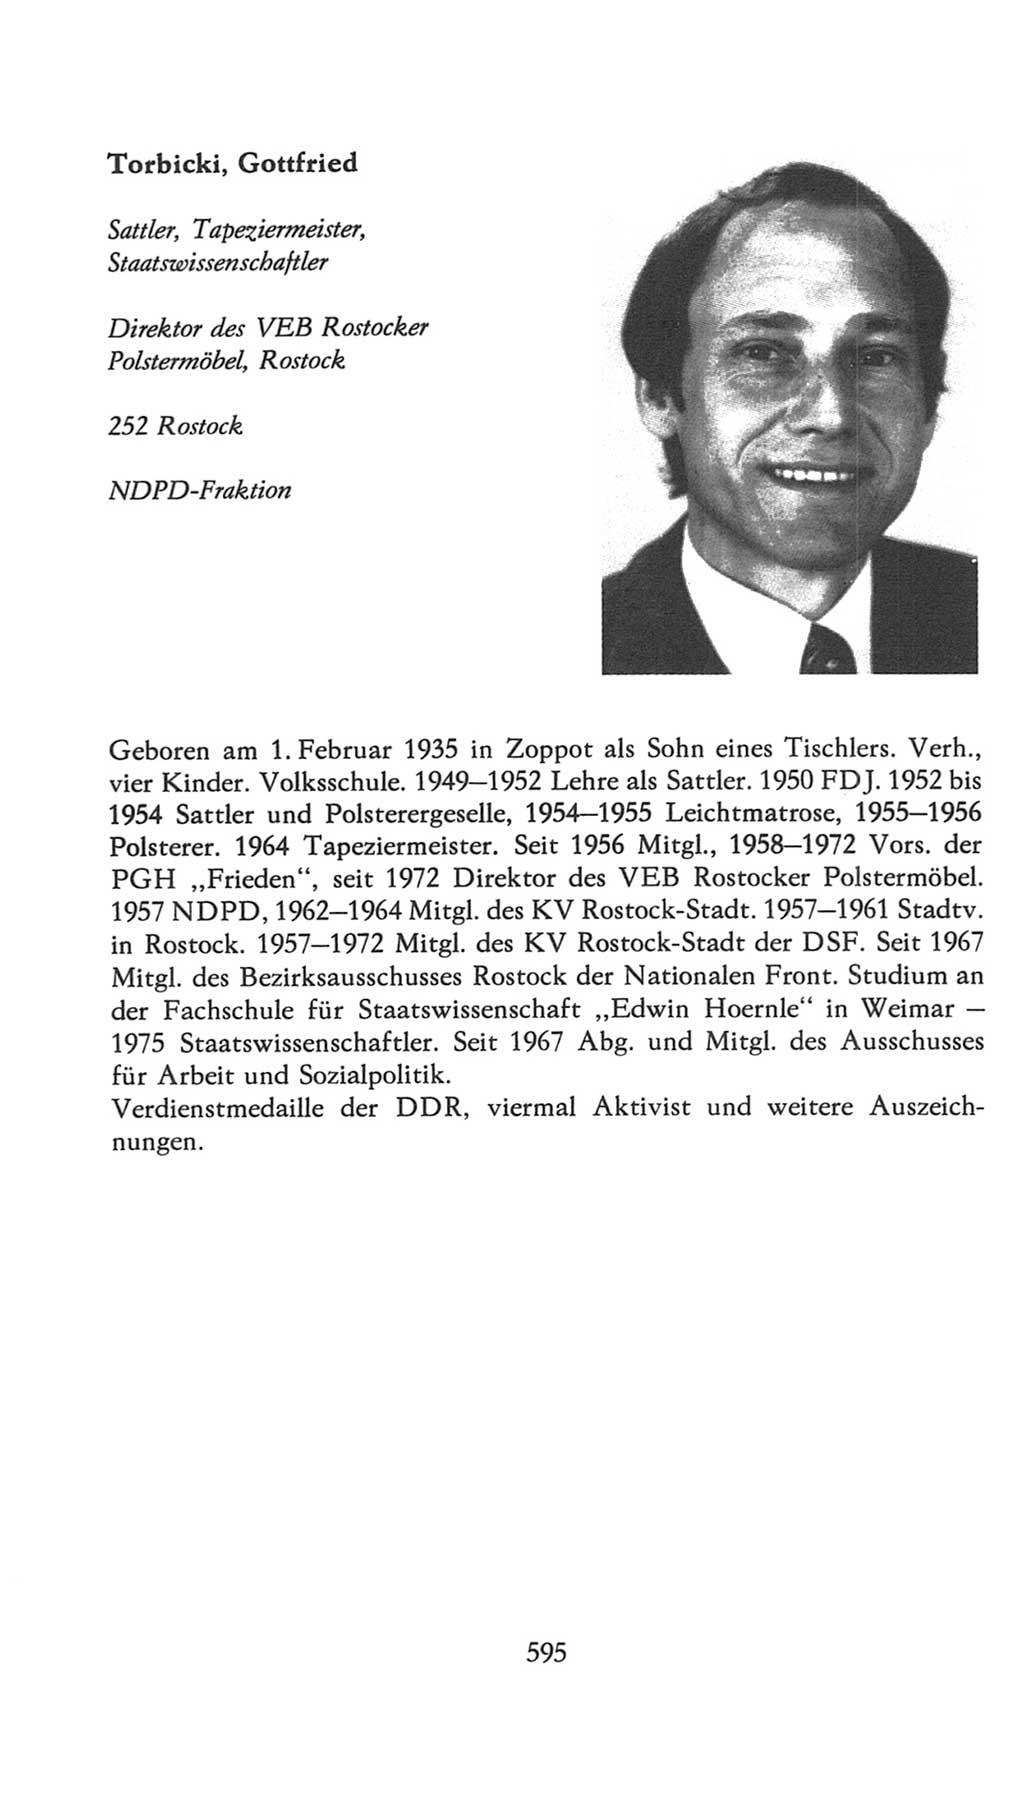 Volkskammer (VK) der Deutschen Demokratischen Republik (DDR), 7. Wahlperiode 1976-1981, Seite 595 (VK. DDR 7. WP. 1976-1981, S. 595)